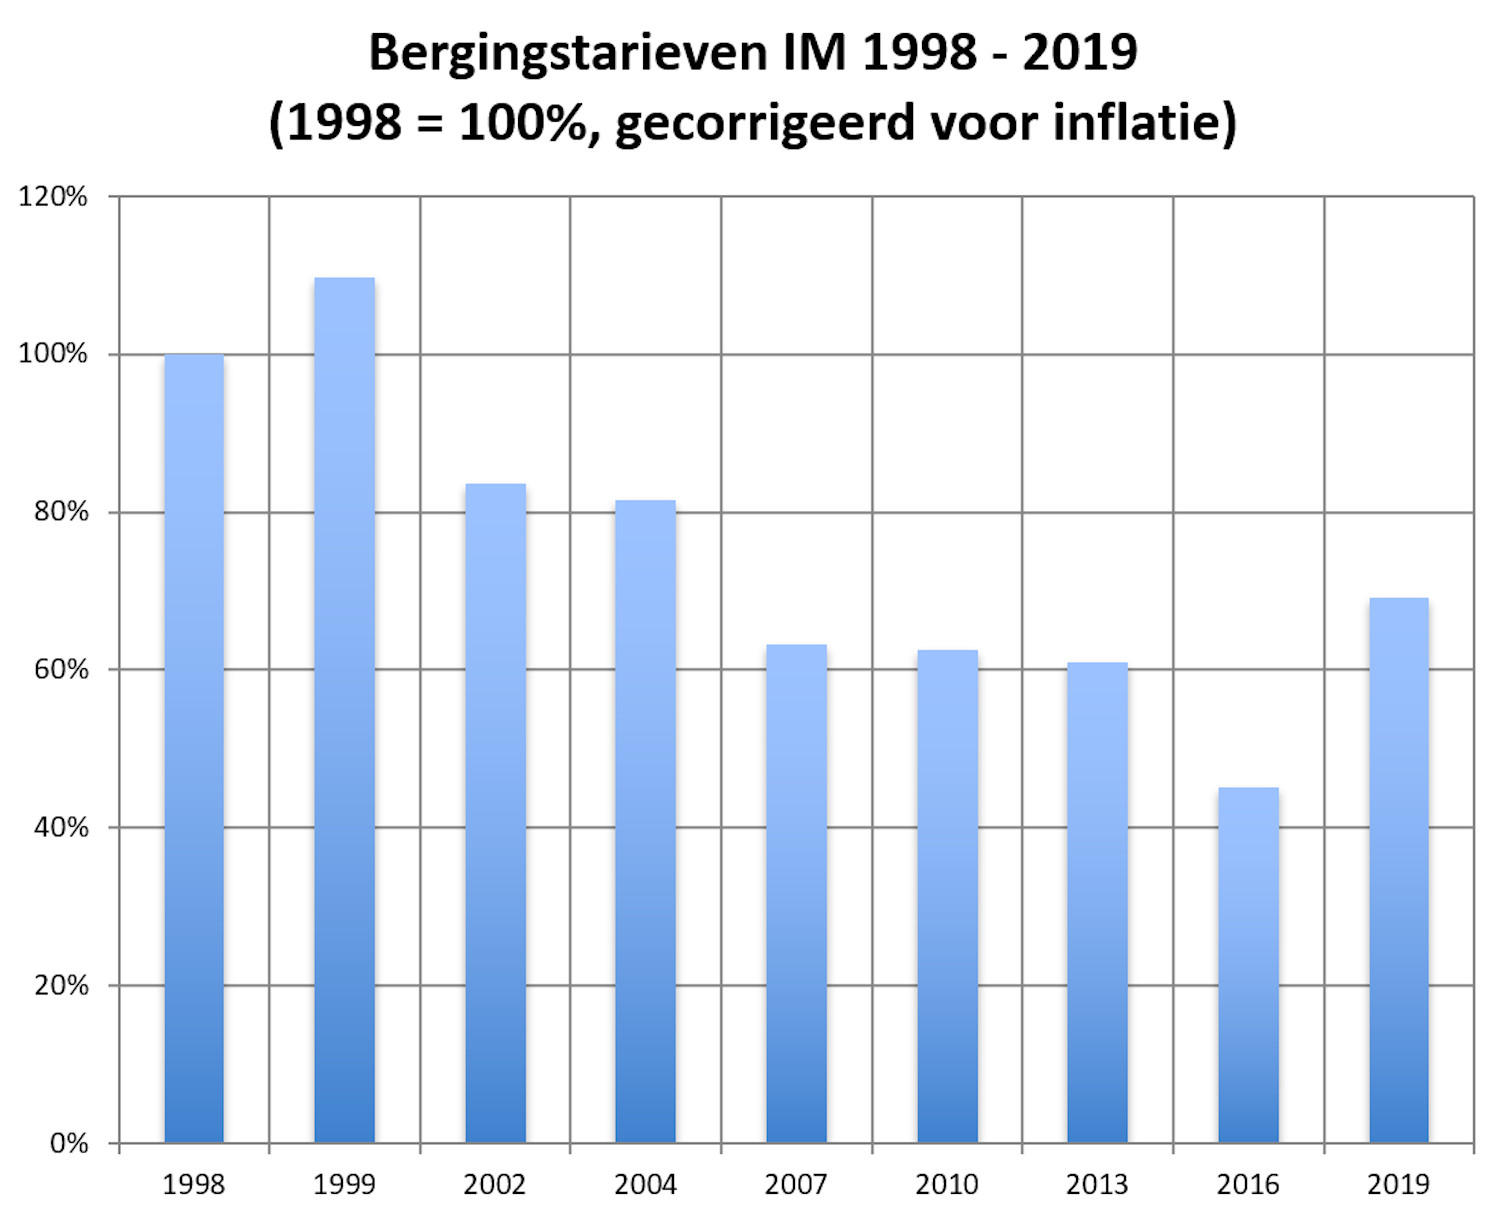 Bergingstarieven 1998 - 2019